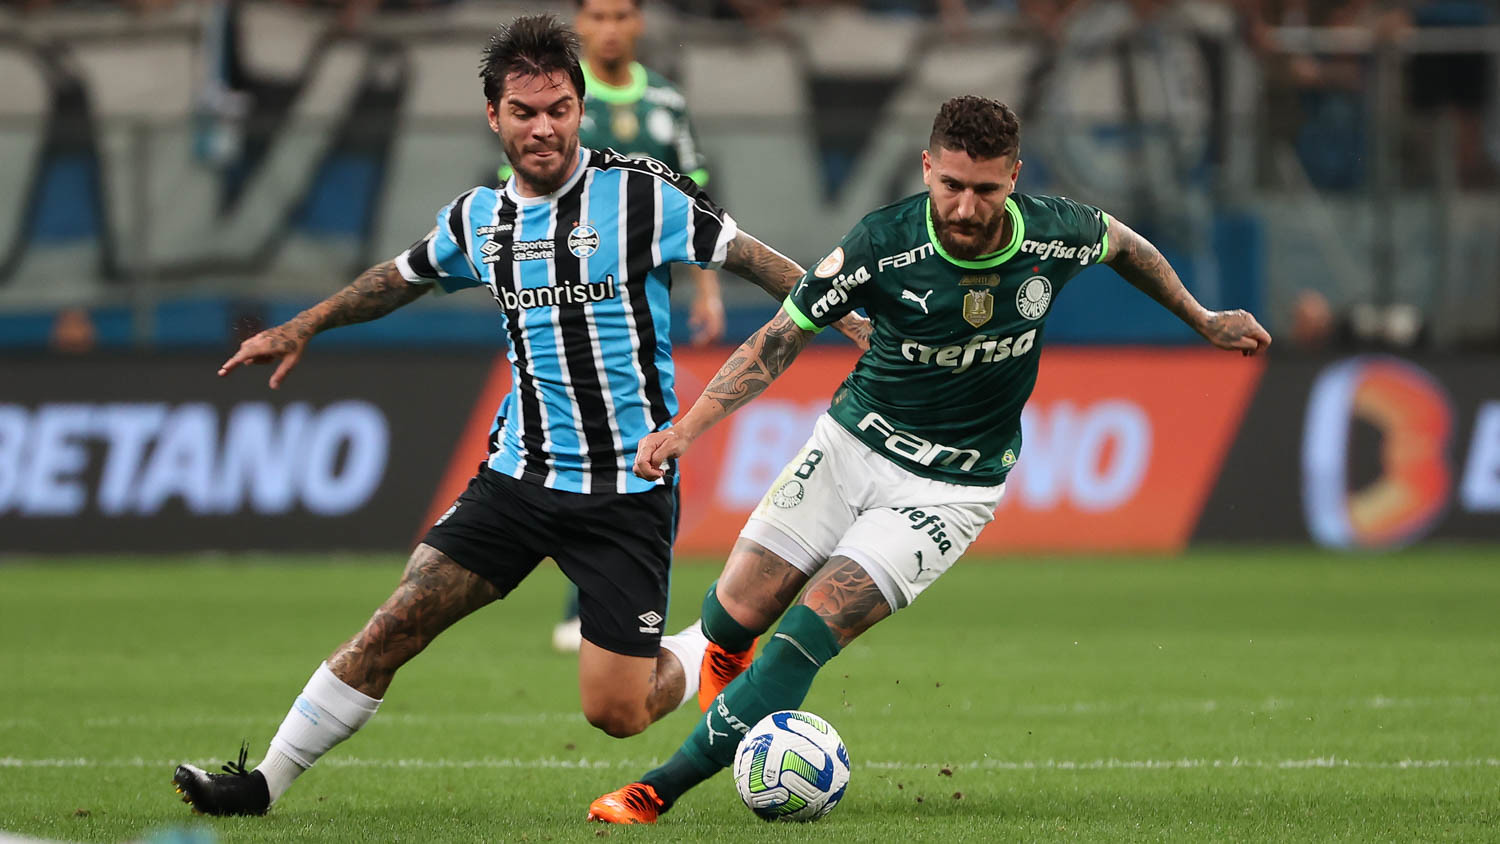 Zé Rafael em disputa de bola durante a derrota do Palmeiras para o Grêmio. (FOTO: Cesar Greco/Palmeiras).